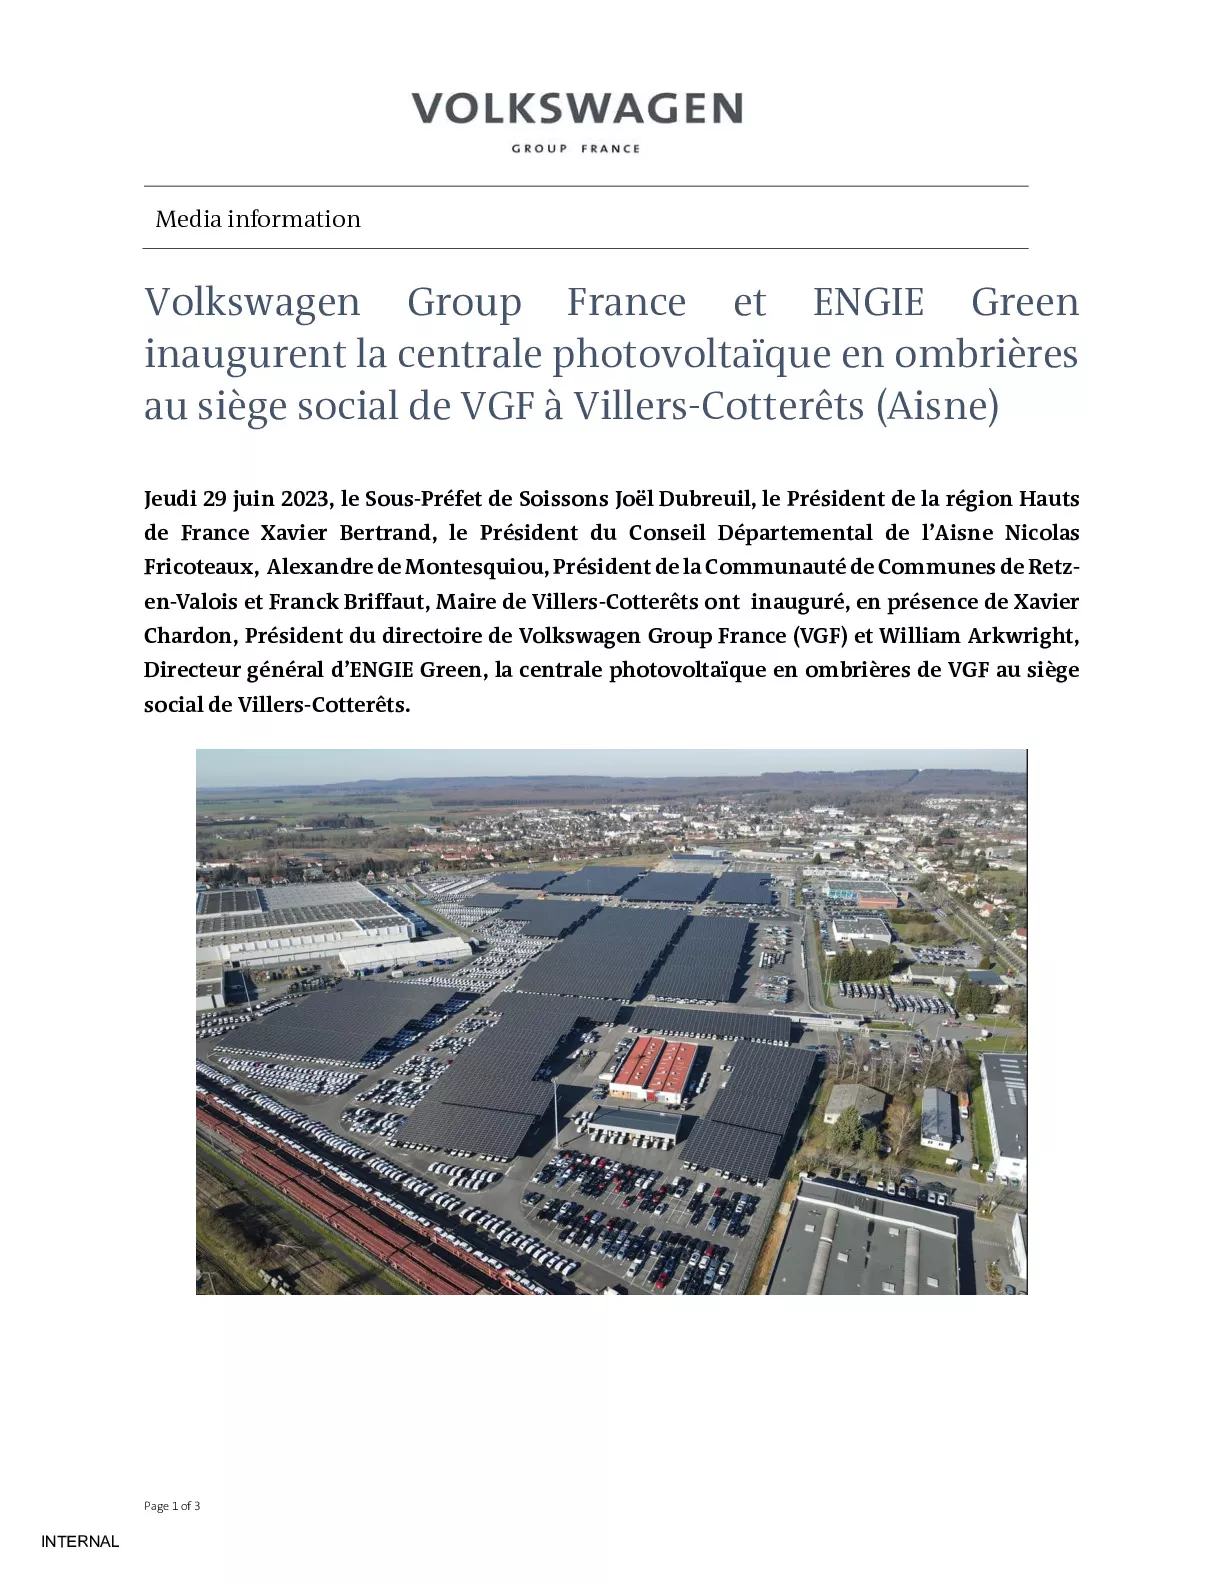 Volkswagen Group France et ENGIE Green inaugurent la centrale photovoltaïque en ombrières au siège social de VGF à Villers-Cotterêts-pdf